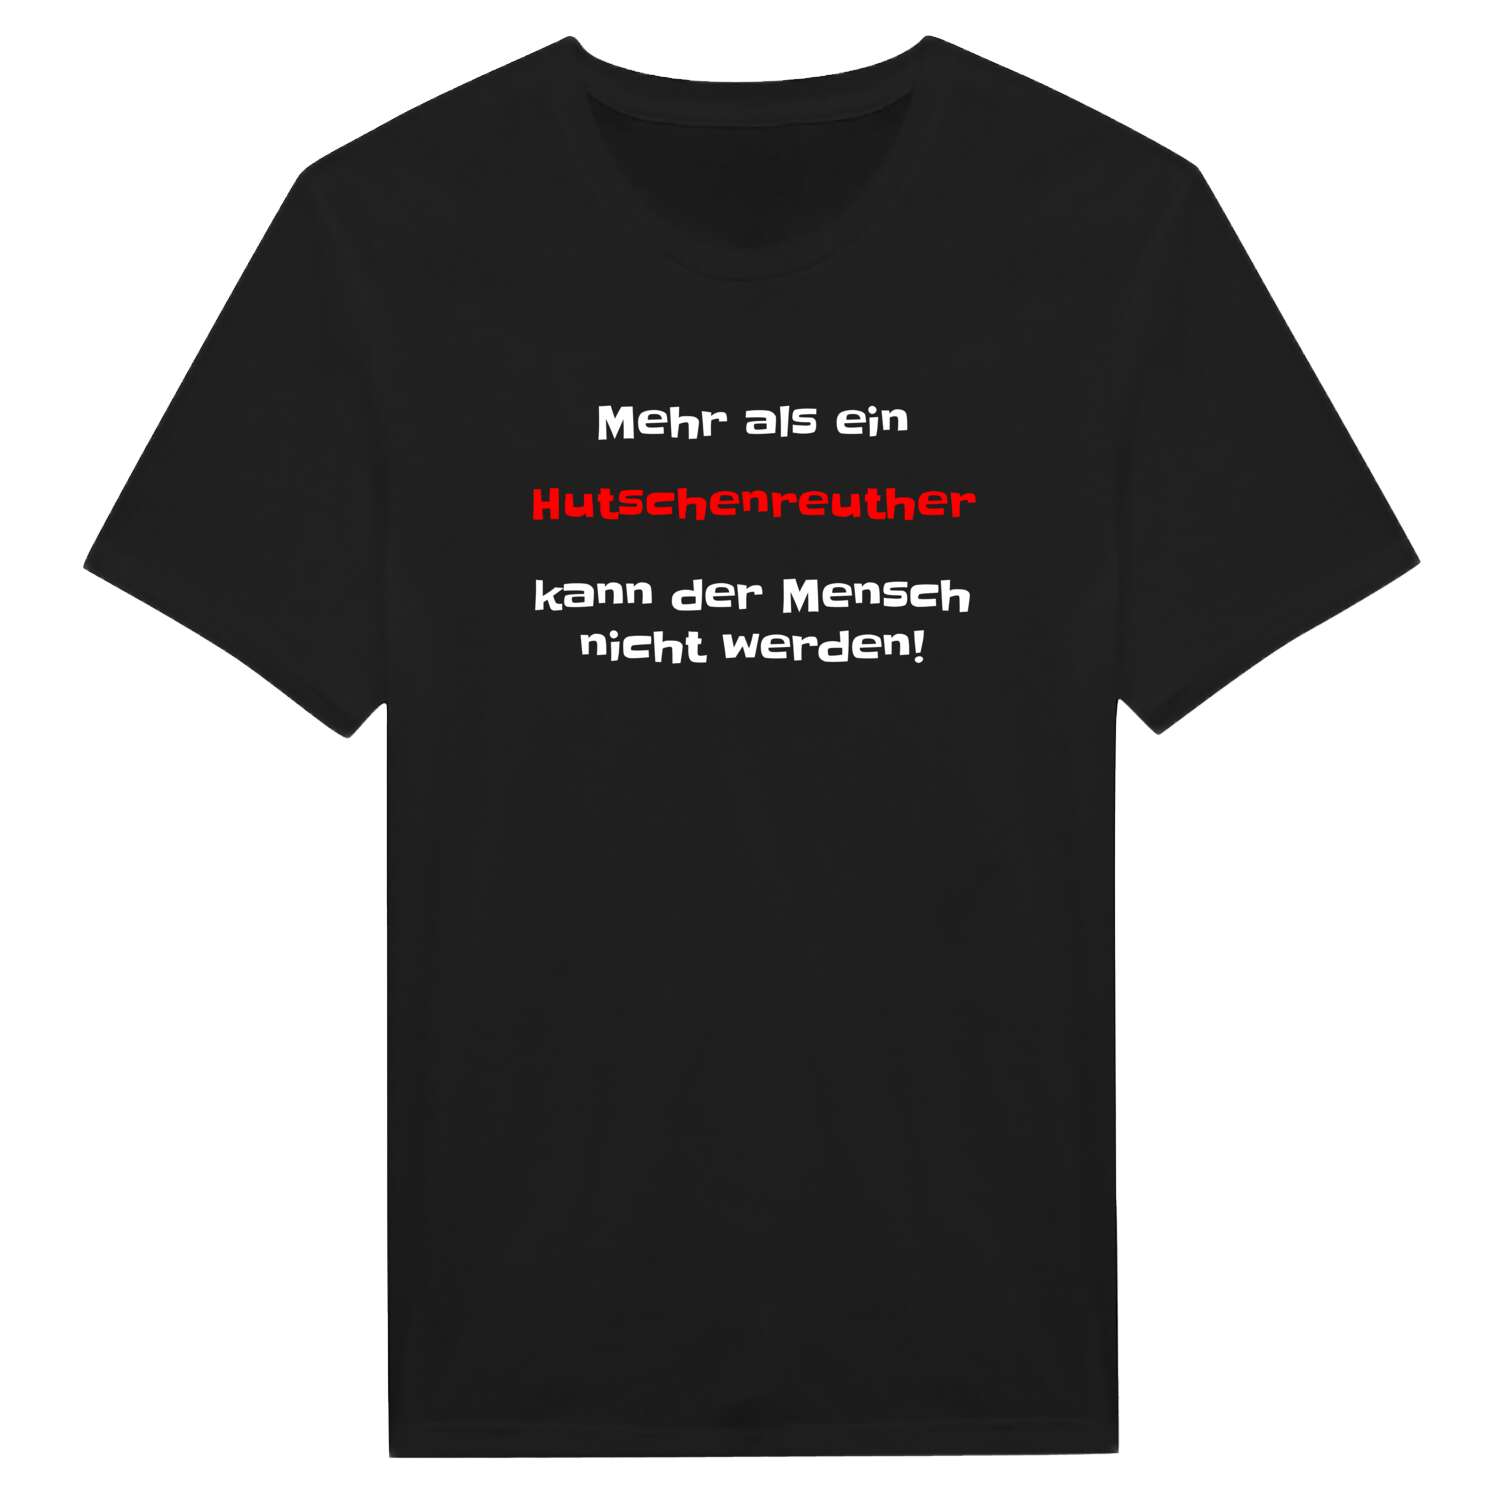 Hutschenreuth T-Shirt »Mehr als ein«